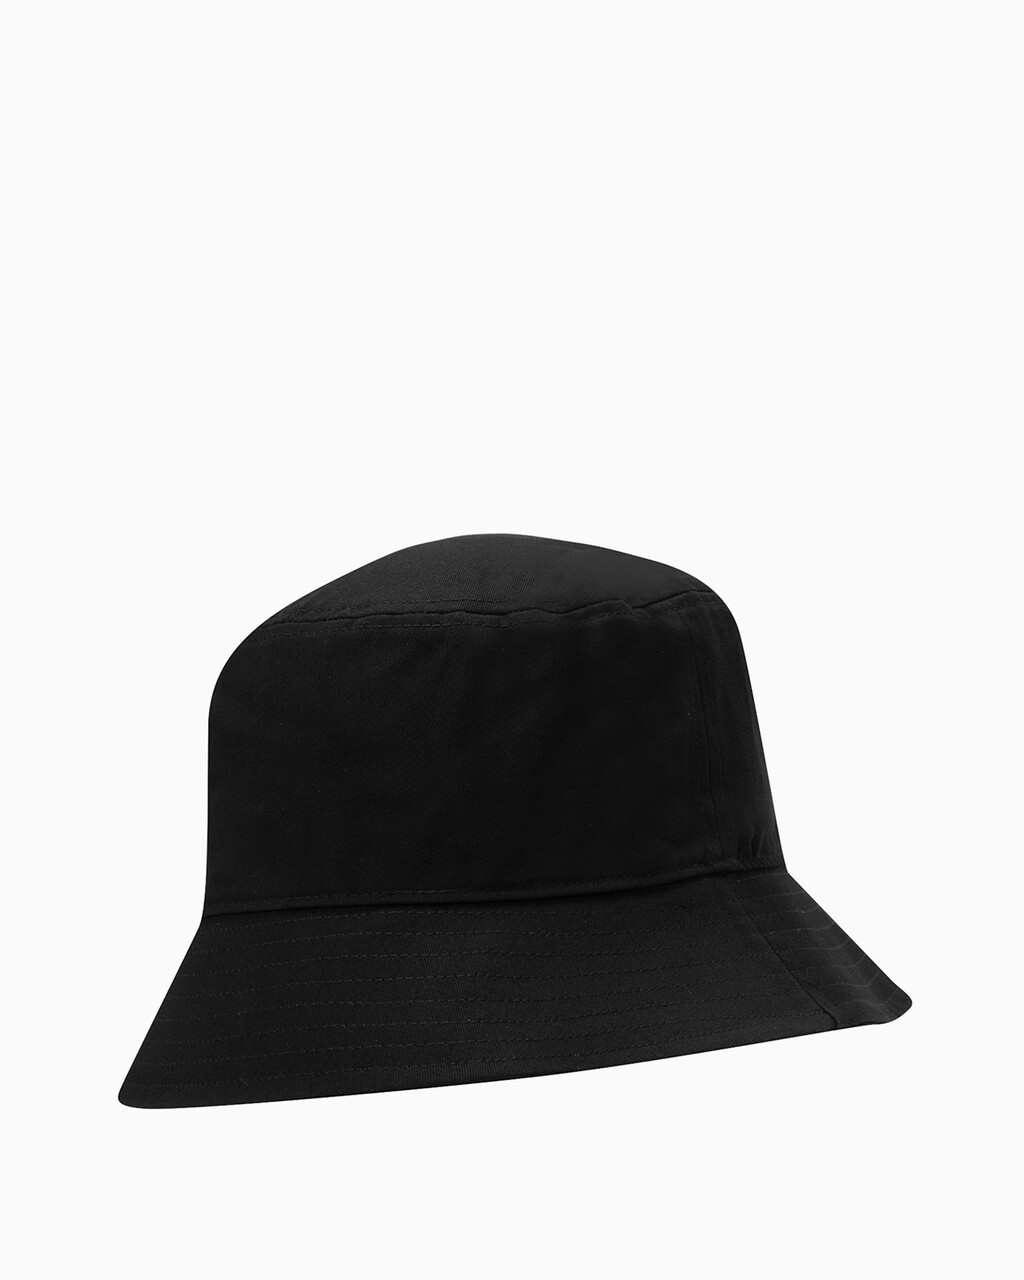 MONOGRAM 標誌漁夫帽, BLACK, hi-res